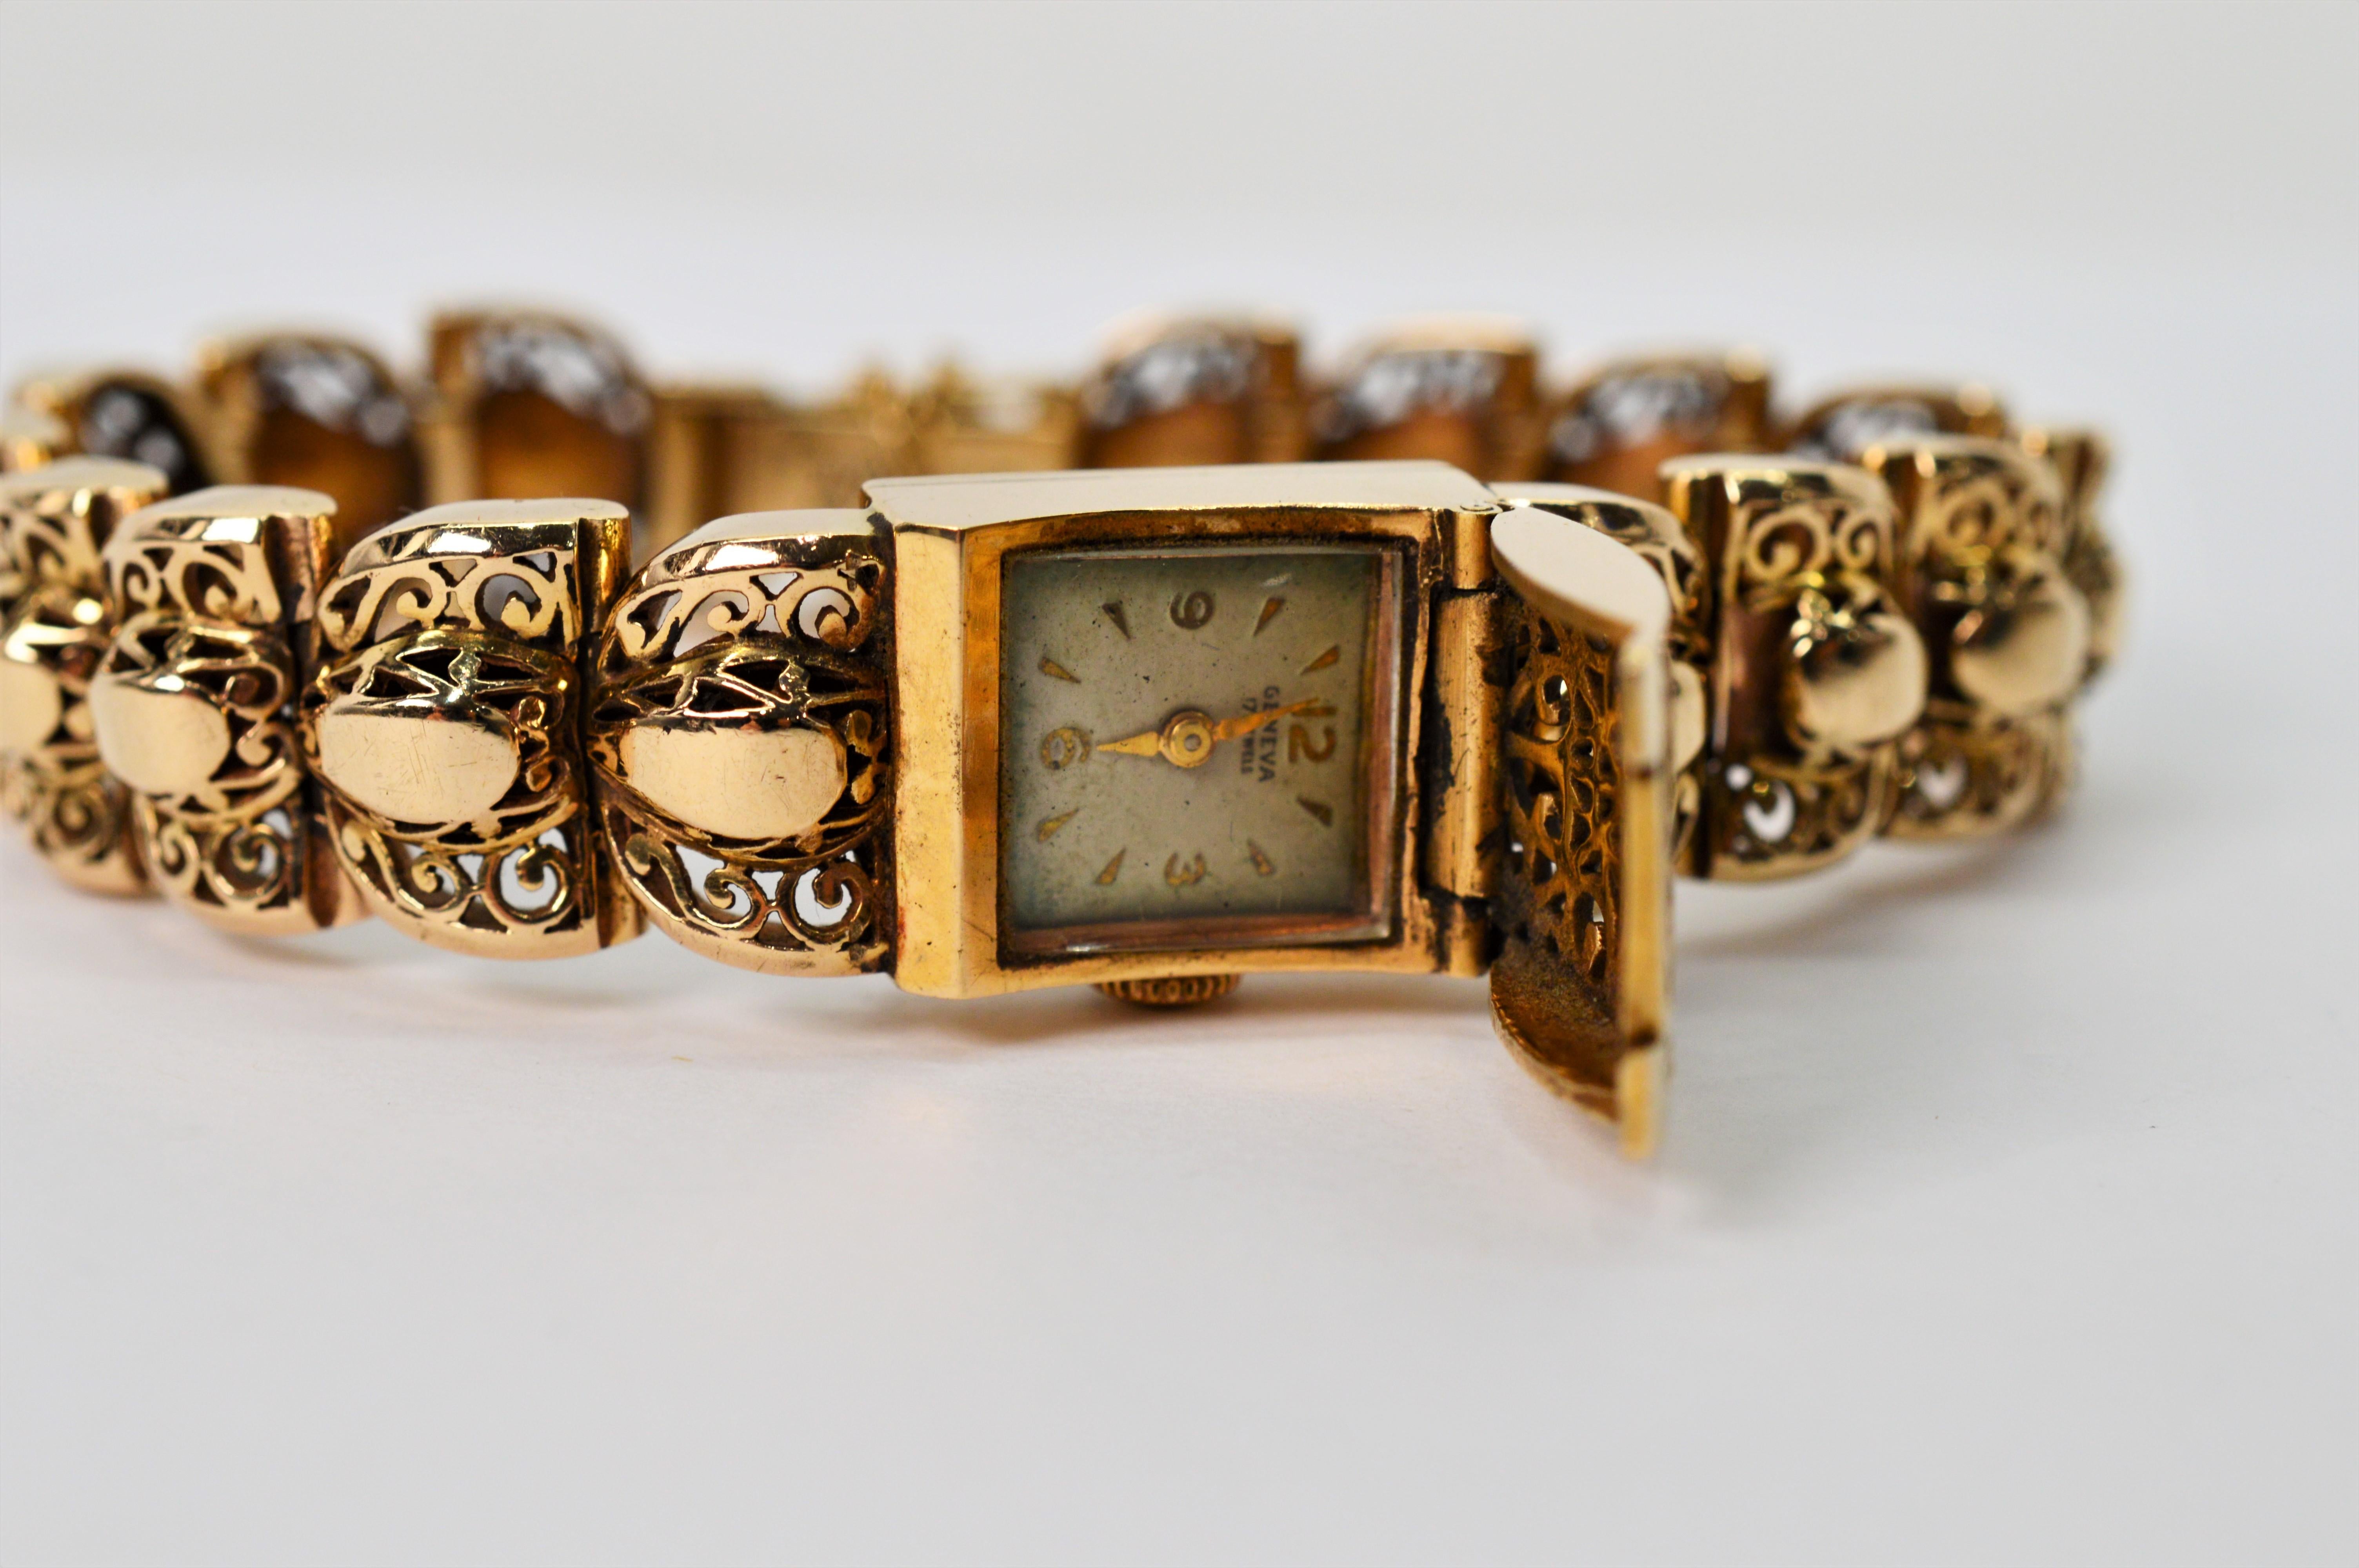 Des maillons filigranes fantaisie en or jaune 14 carats créent le bracelet de 7-1/2 pouces de cette montre-bracelet pour femme des années 1950. Le grand maillon central complémentaire avec couvercle filigrane dissimule une montre Rosieres Genève à